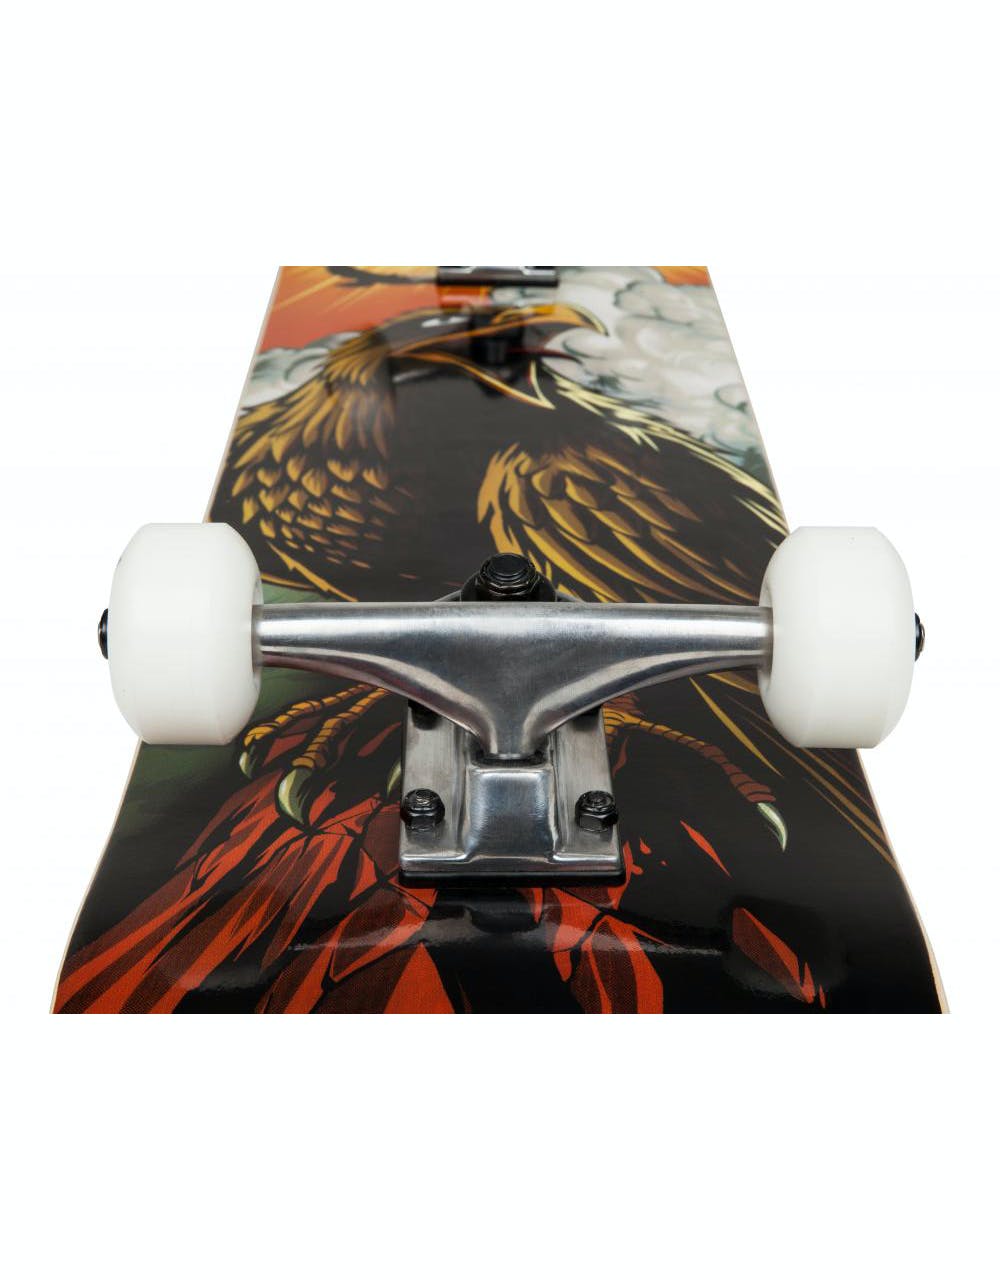 Tony Hawk 180 Hawk Roar Complete Skateboard - 7.75"